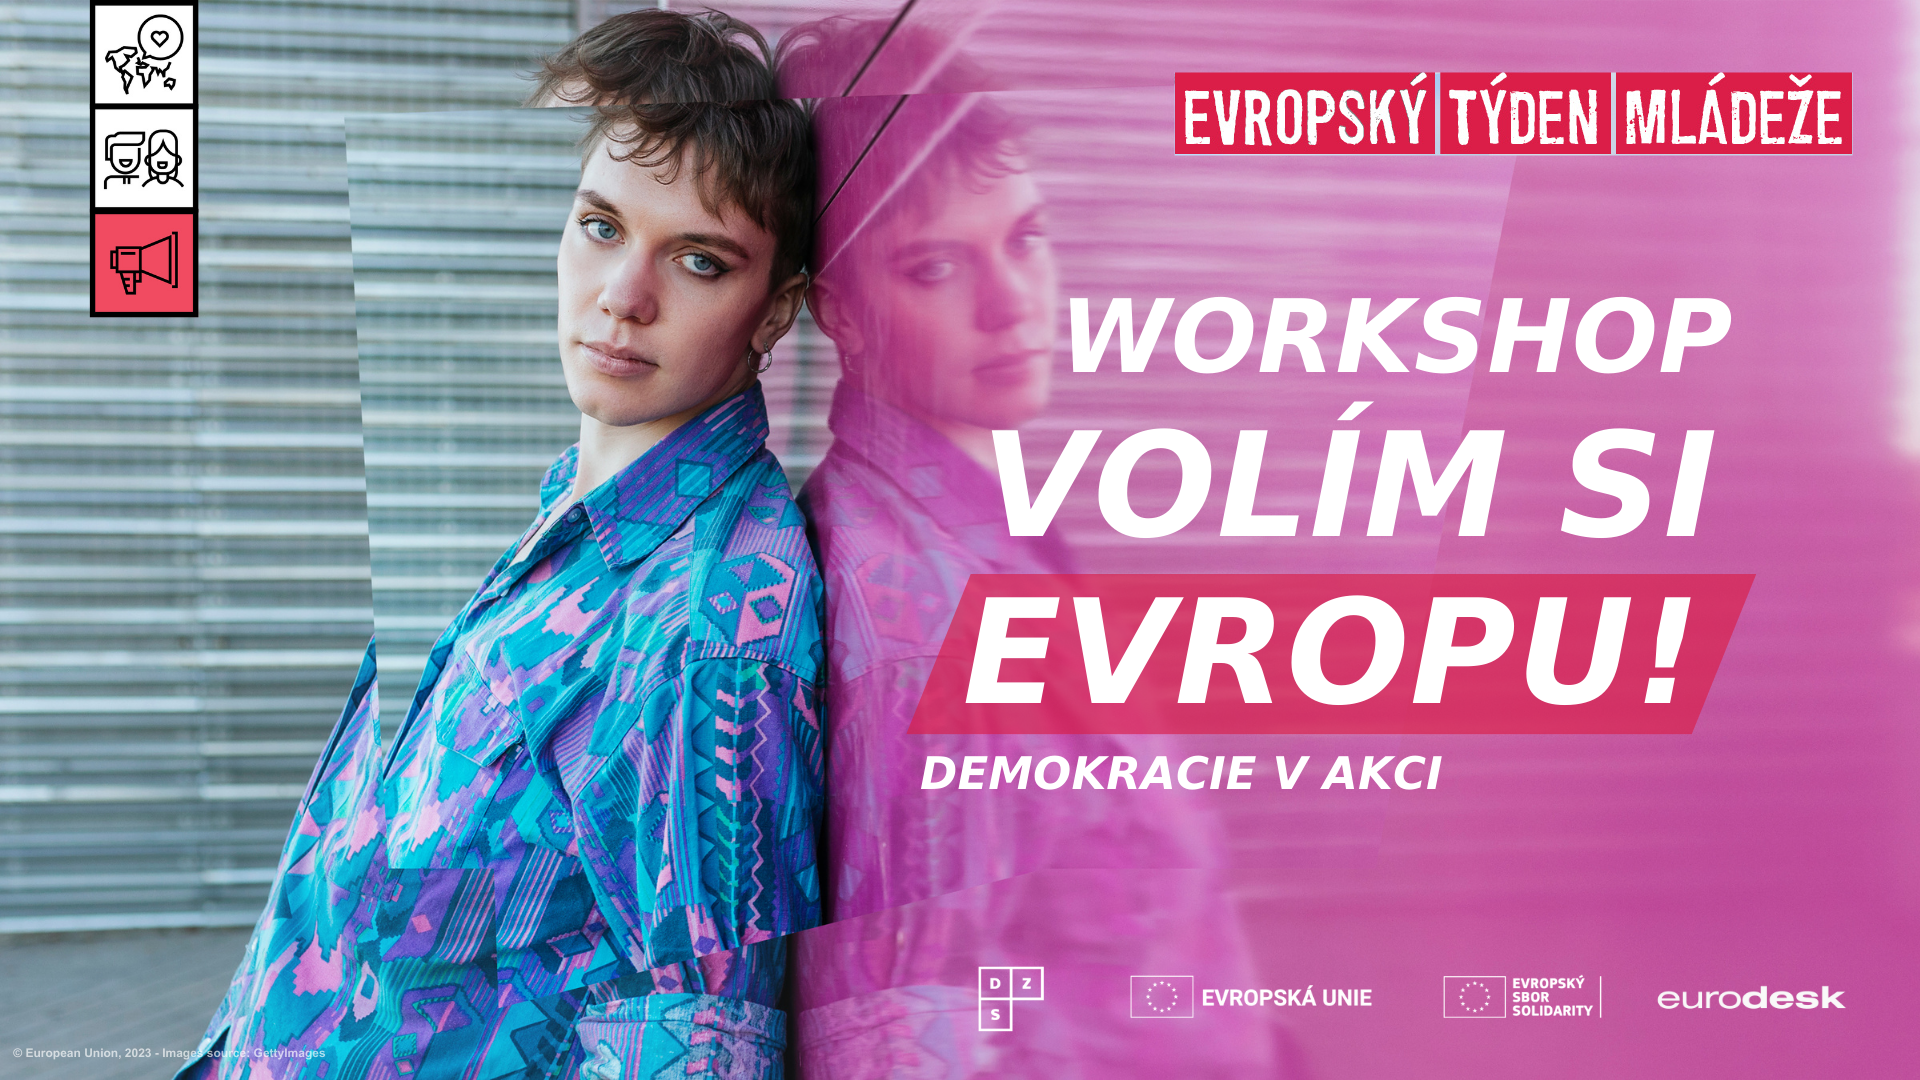 Přečtete si více ze článku Volím si Evropu! Eurocentrum Pardubice nabízí interaktivní volební workshop pro studenty SŠ a VOŠ